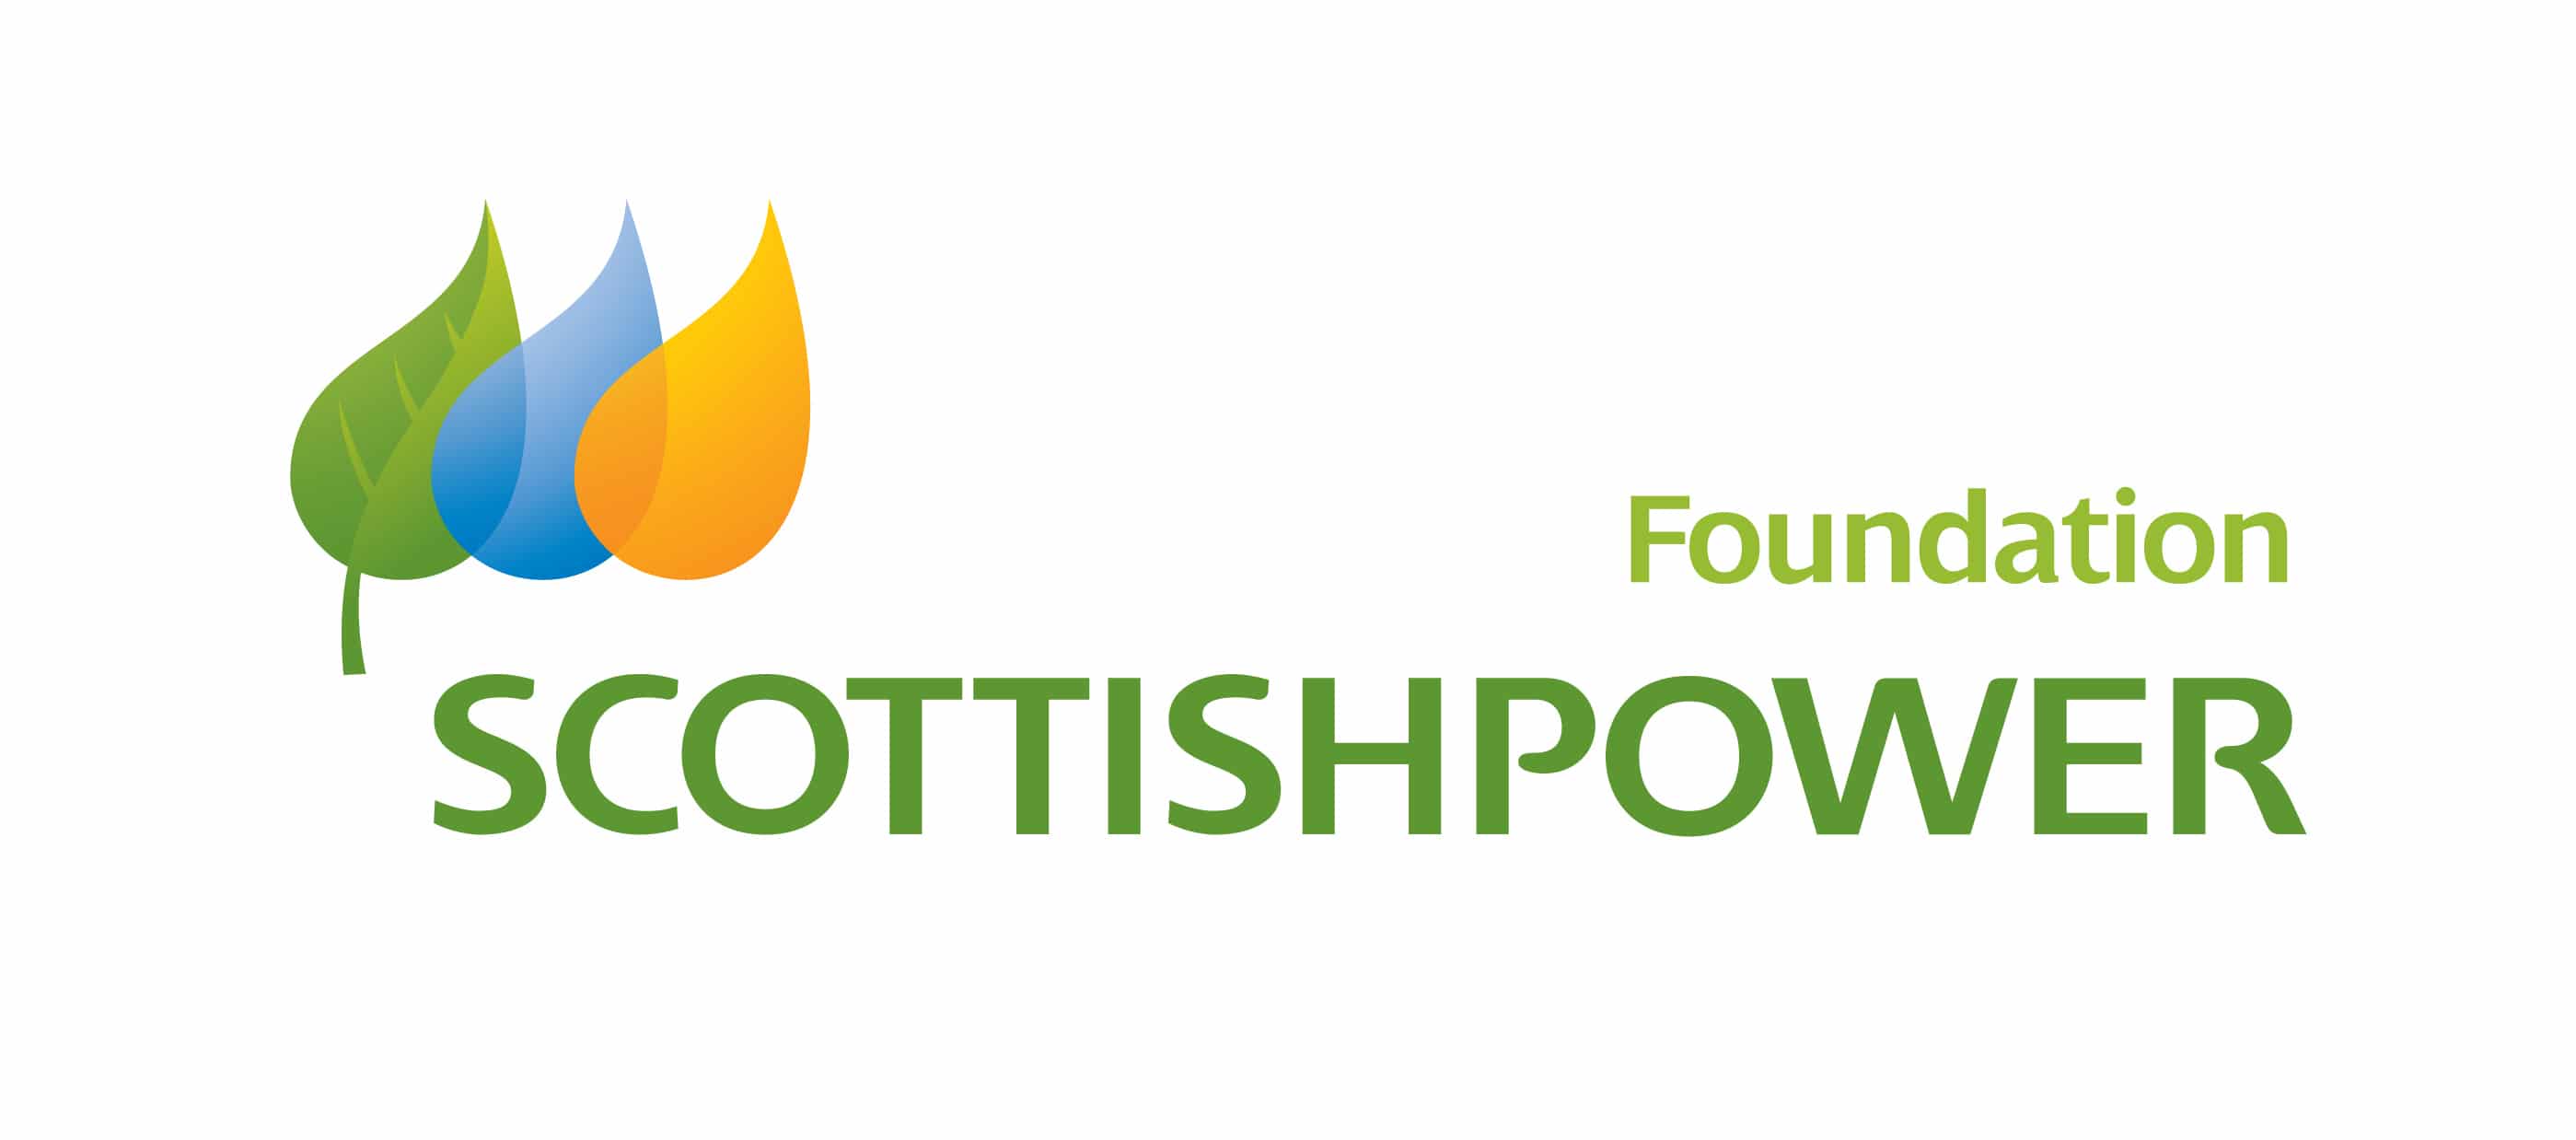 scottishpower foundation logo